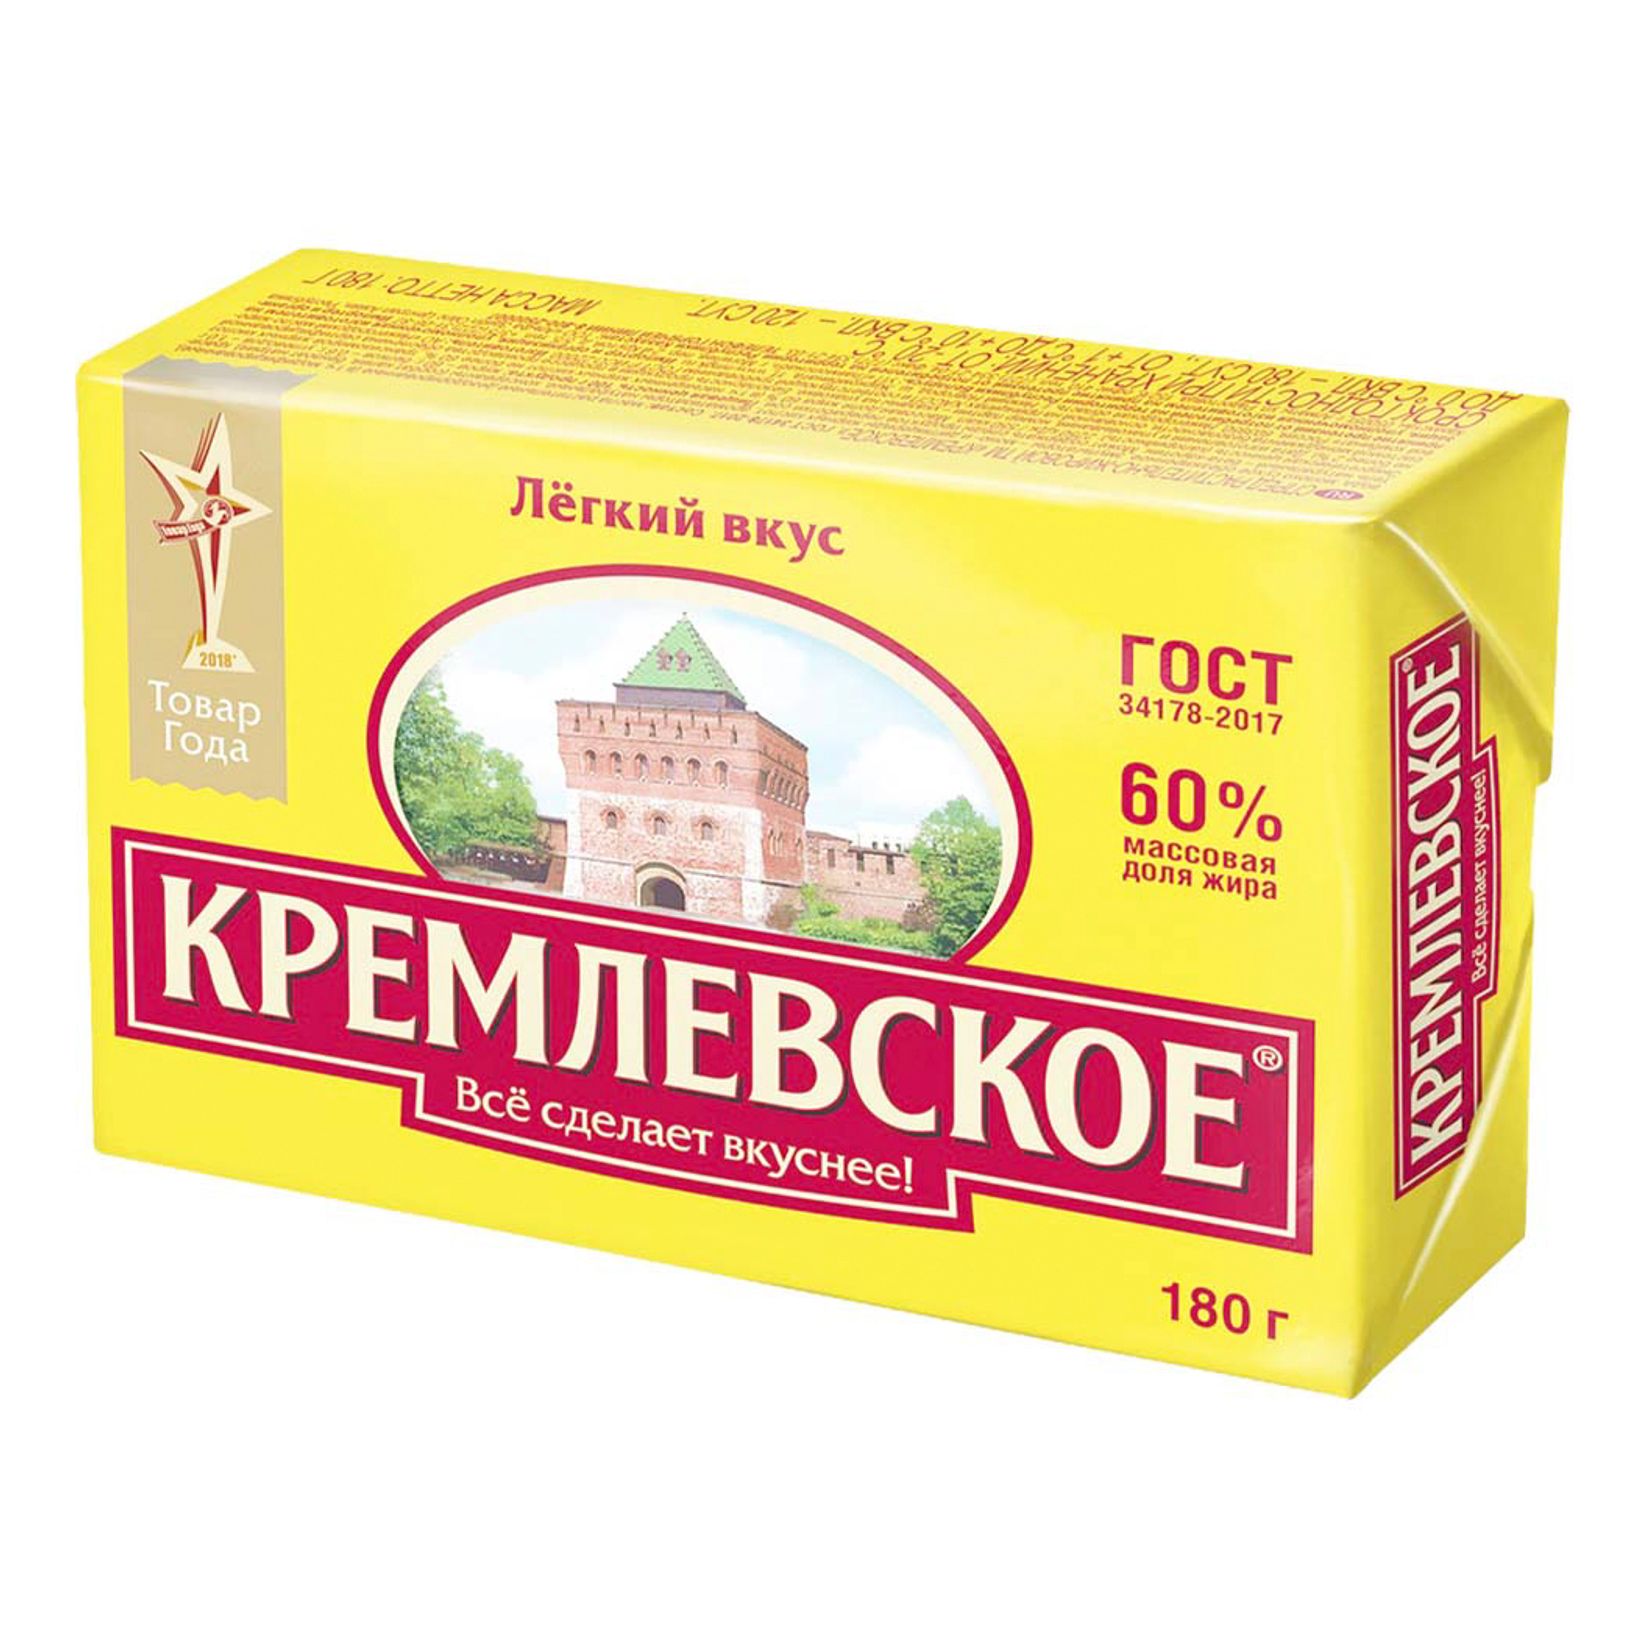 Спред Кремлевское растительно-жировой 60% СЗМЖ 180 г